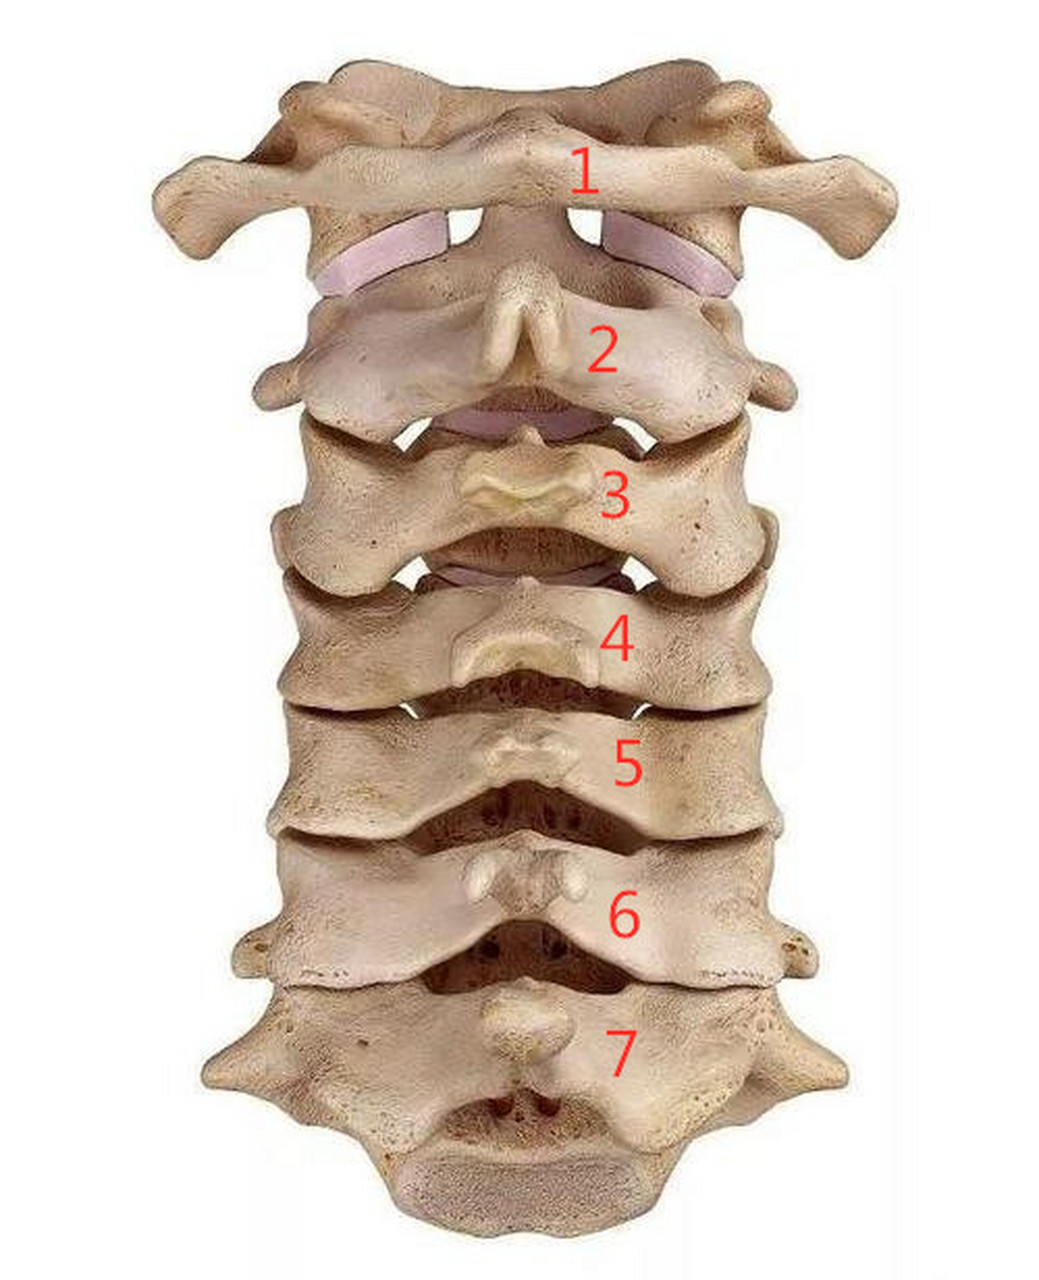 颈椎1-7节准确位置图图片